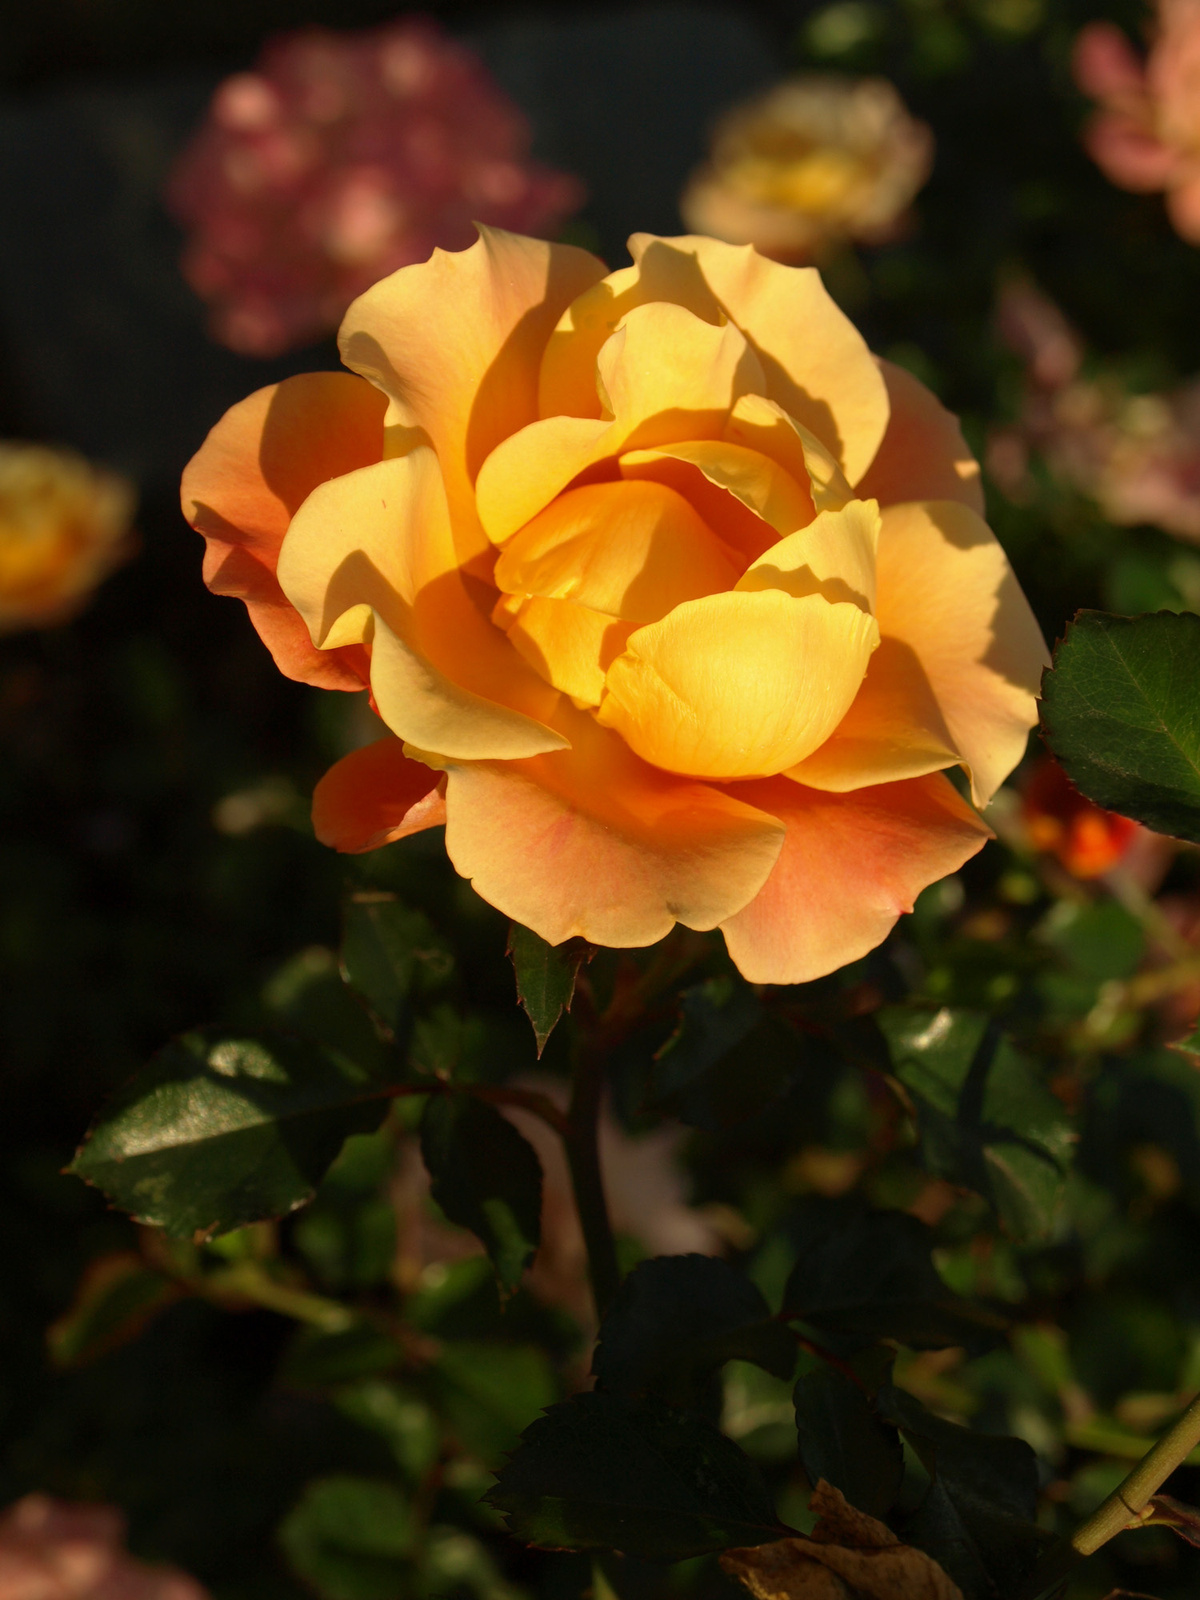 szigeti sárga (őszi)rózsa